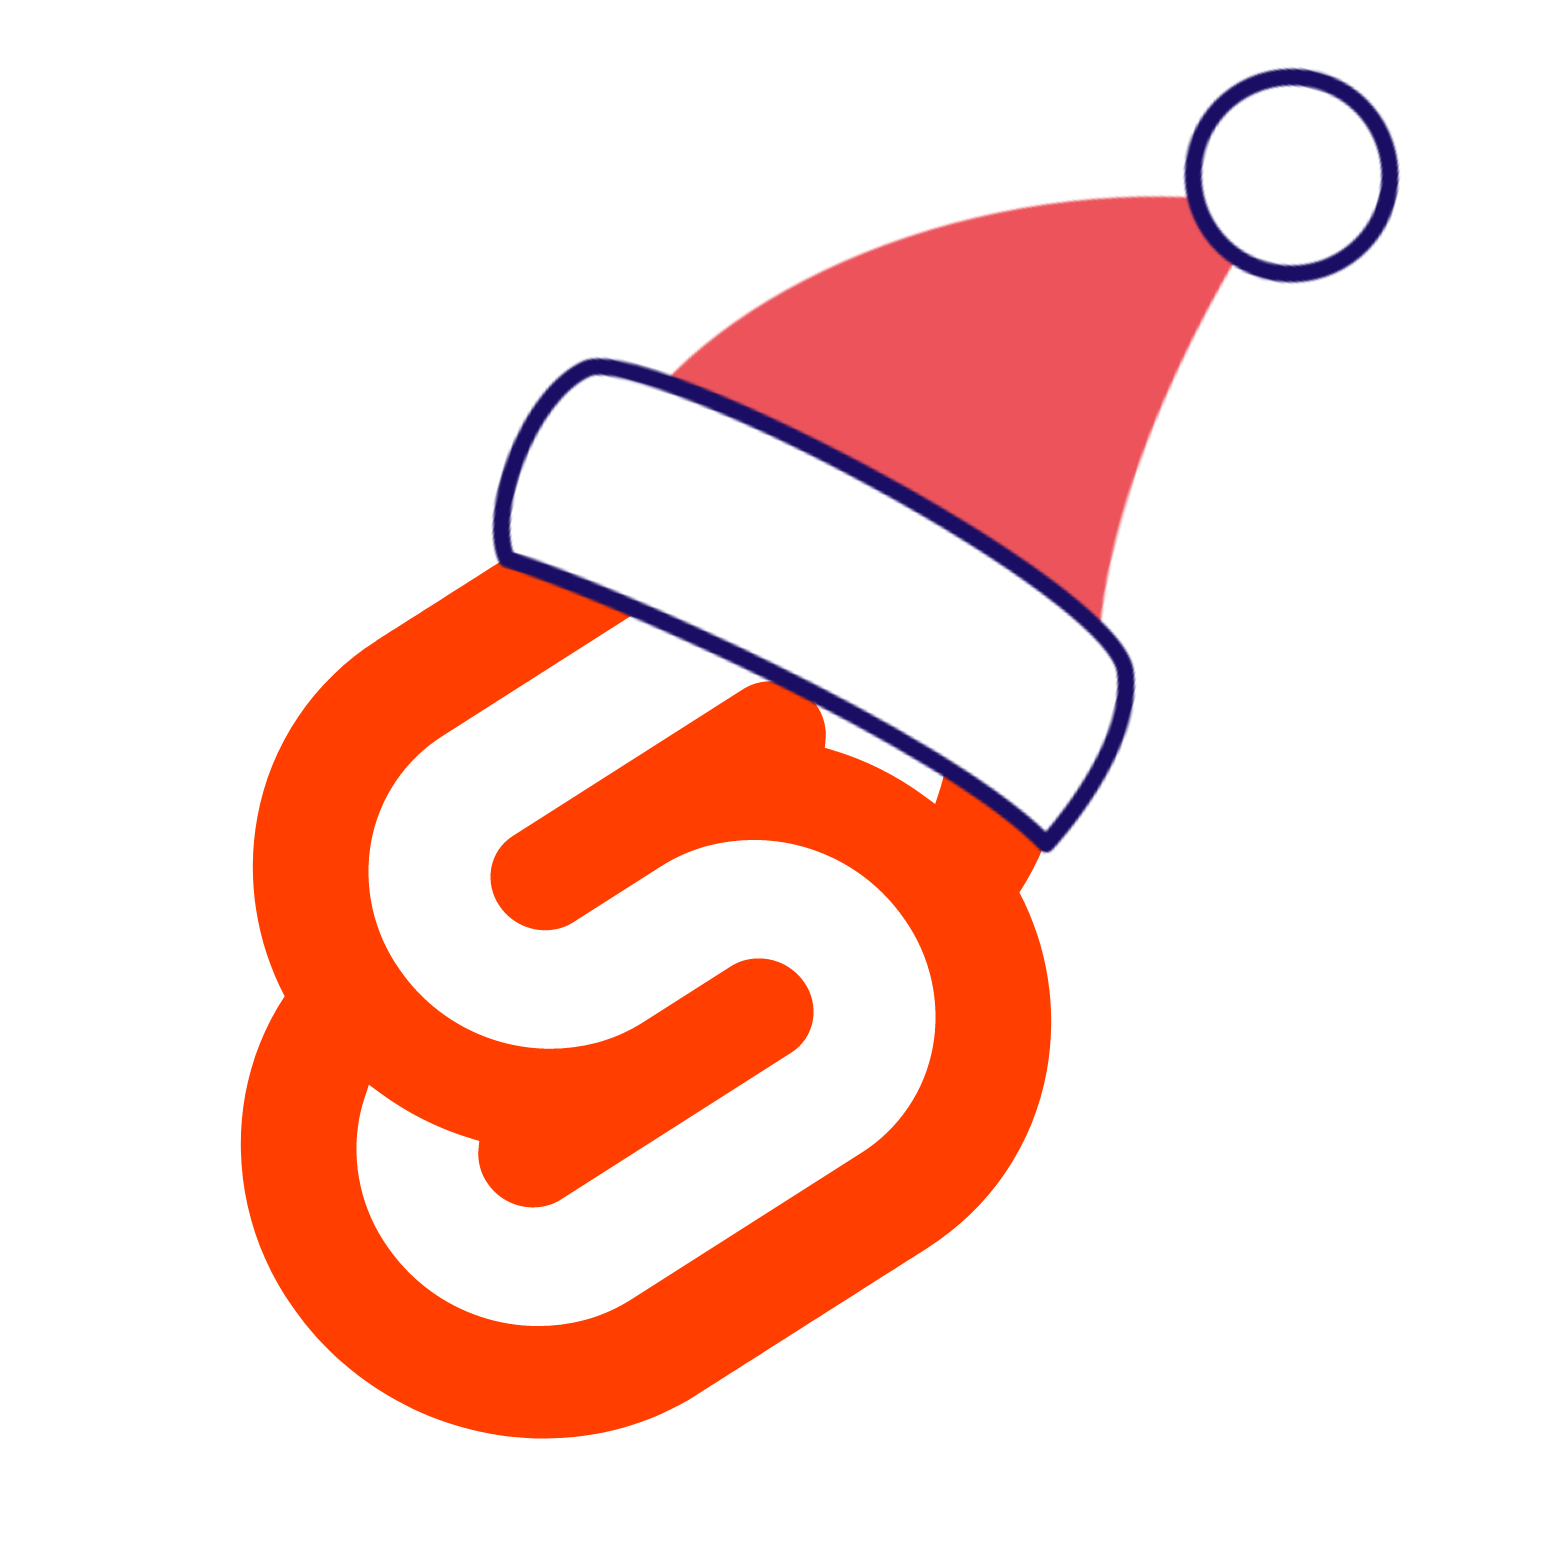 Svelte Santa logo